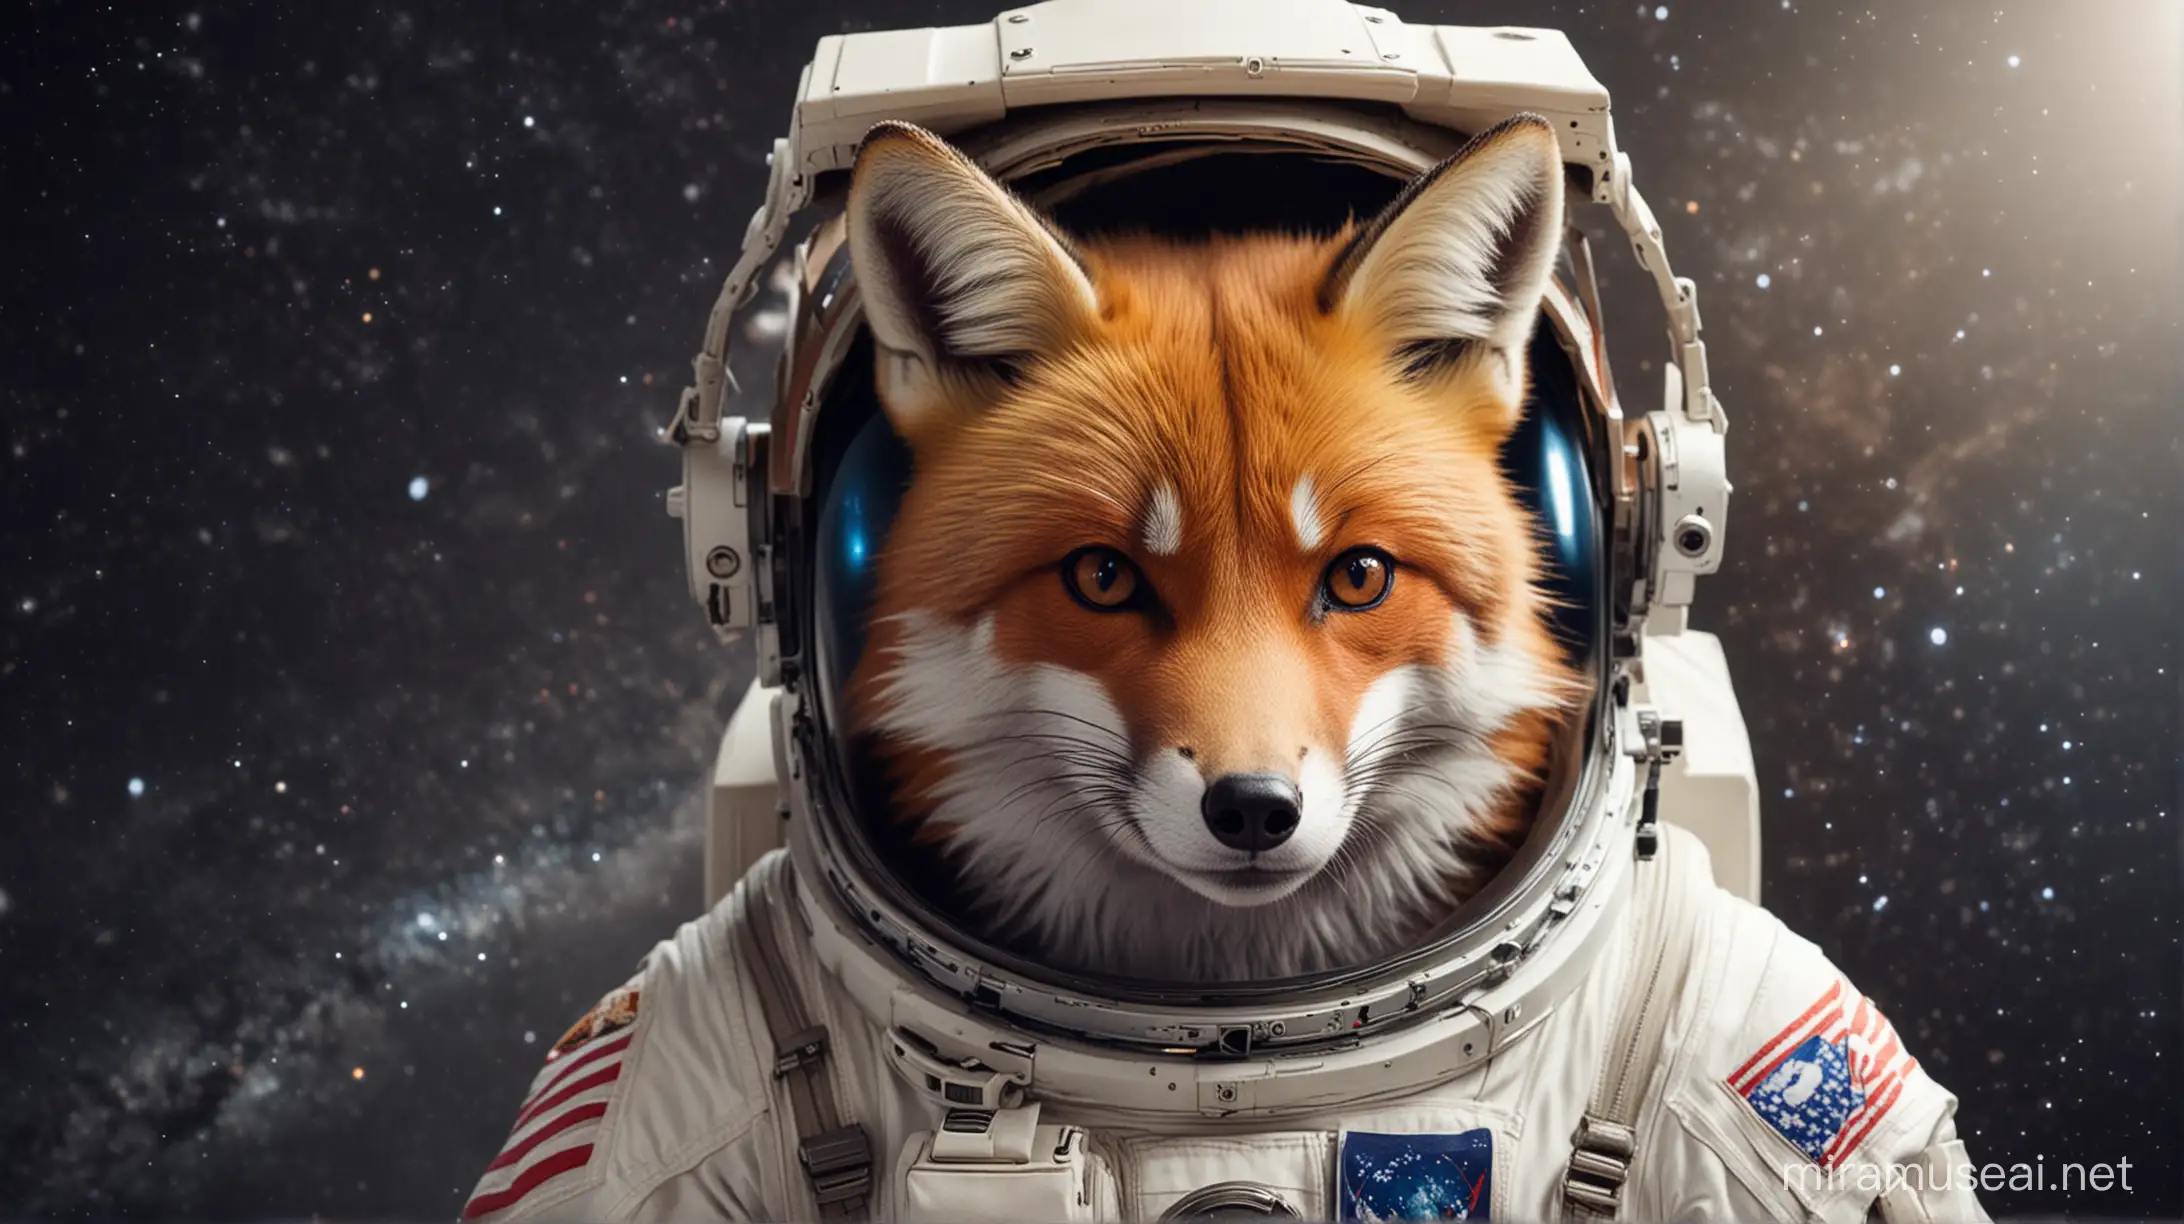 Space Fox in Futuristic Astronaut Helmet